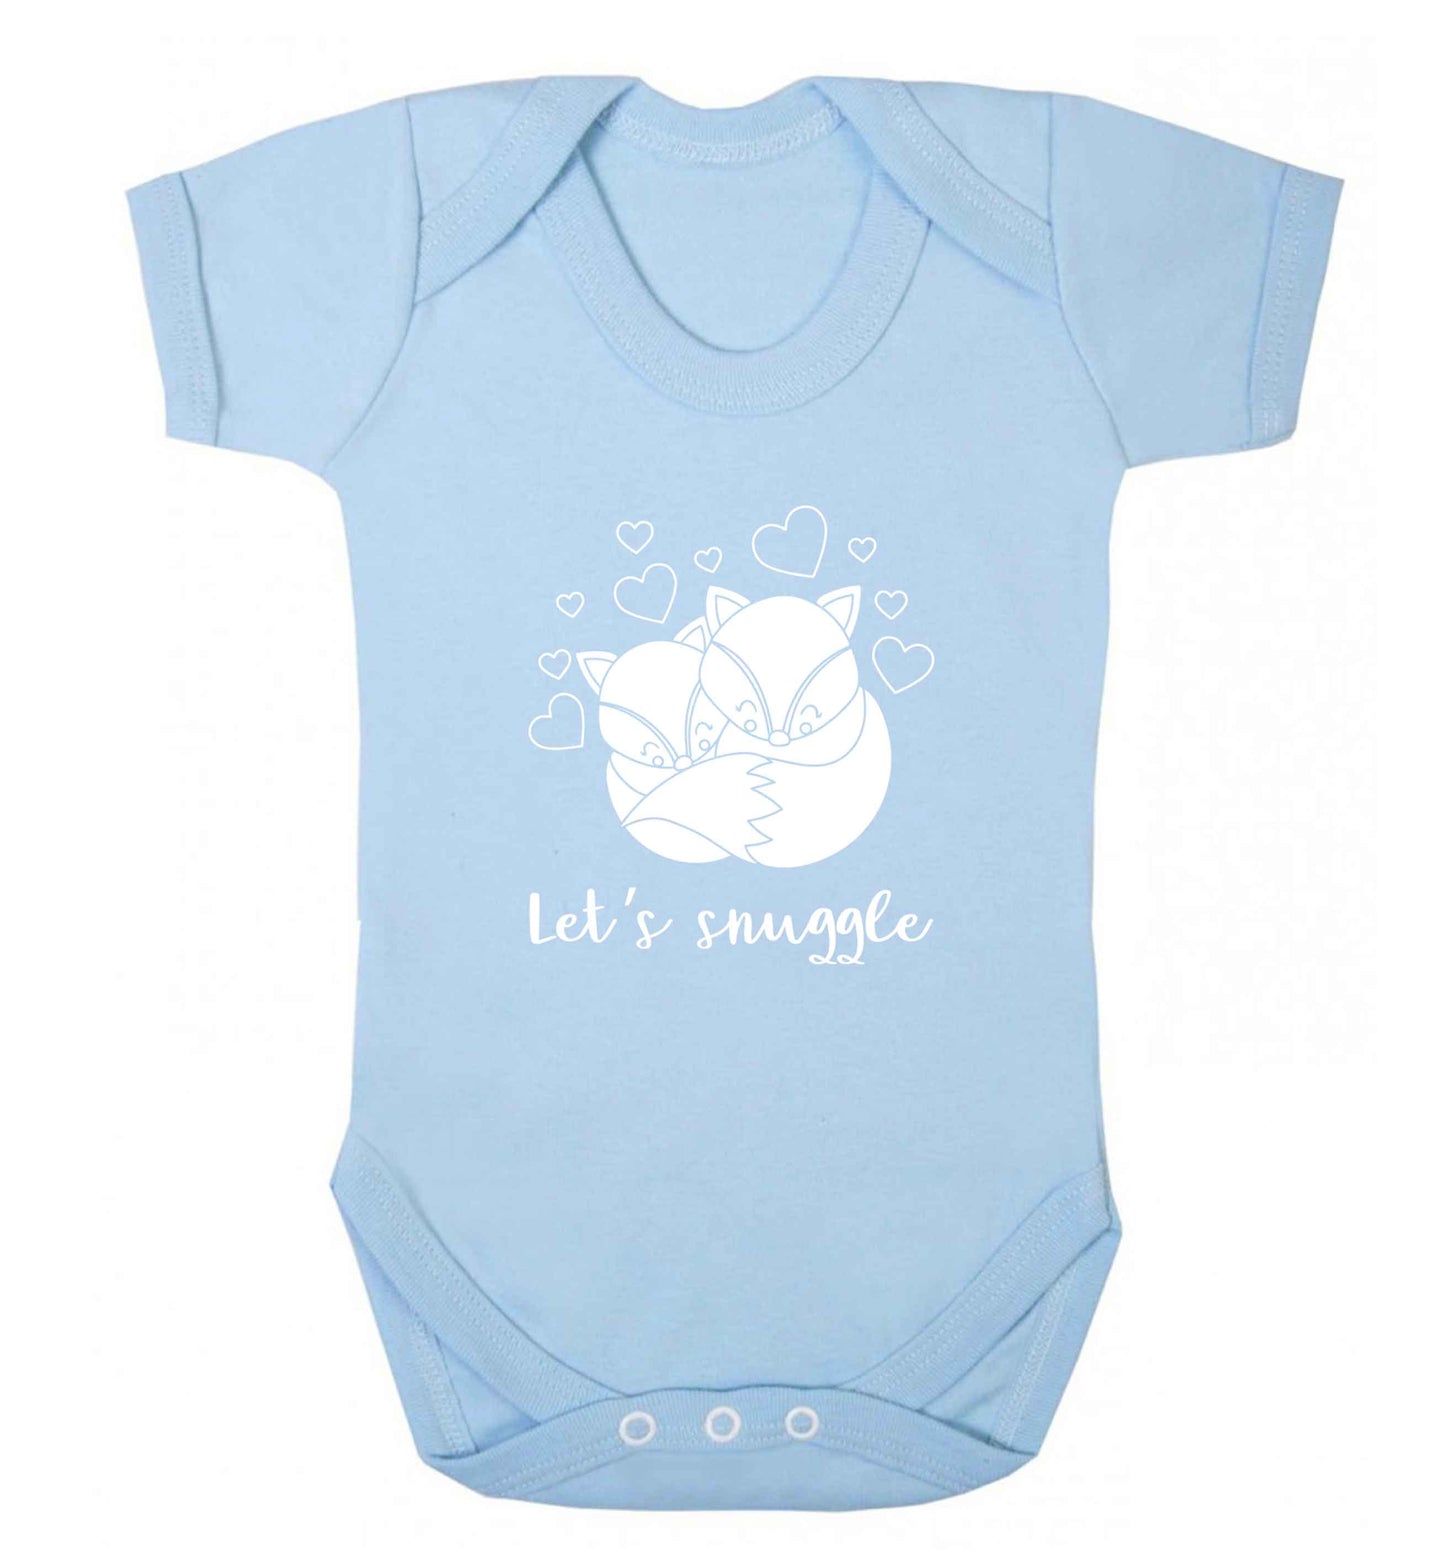 Let's snuggle baby vest pale blue 18-24 months